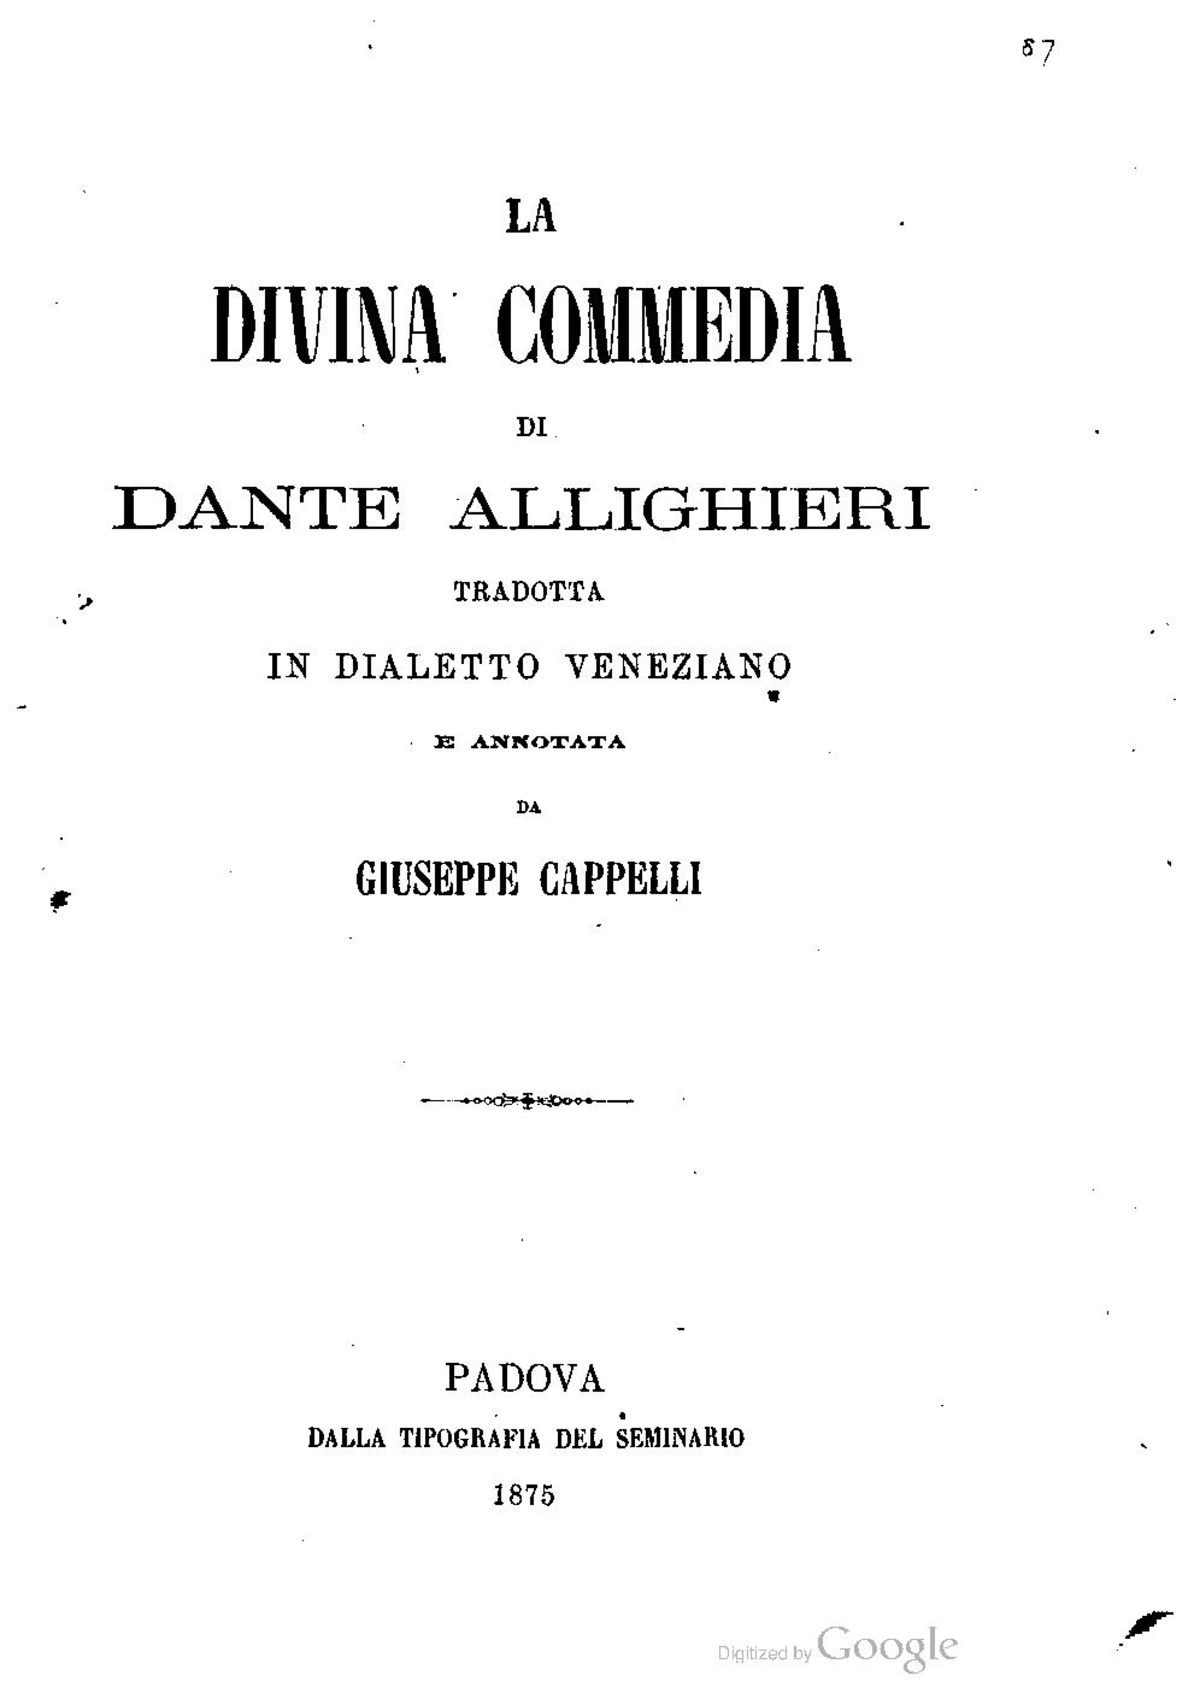 La Divina Commedia in dialetto veneziano.jpg